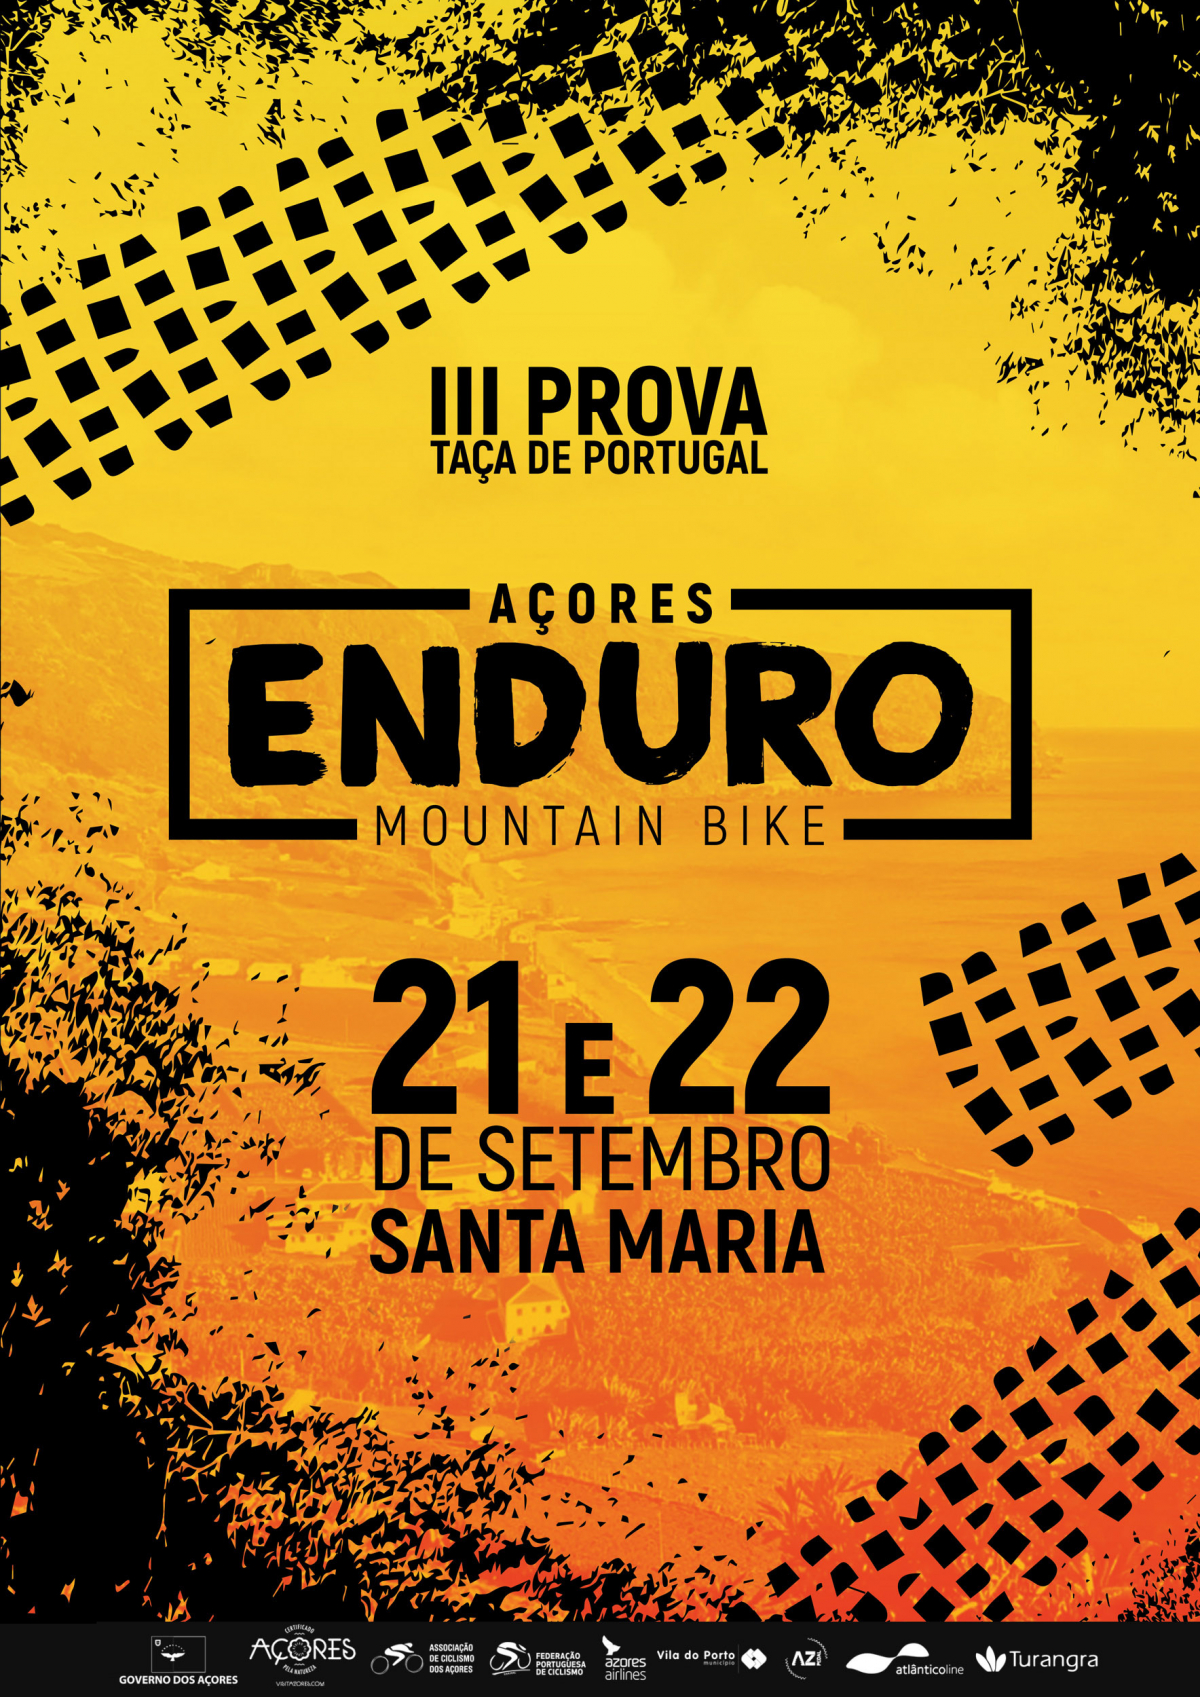 Açores Enduro Mountain Bike